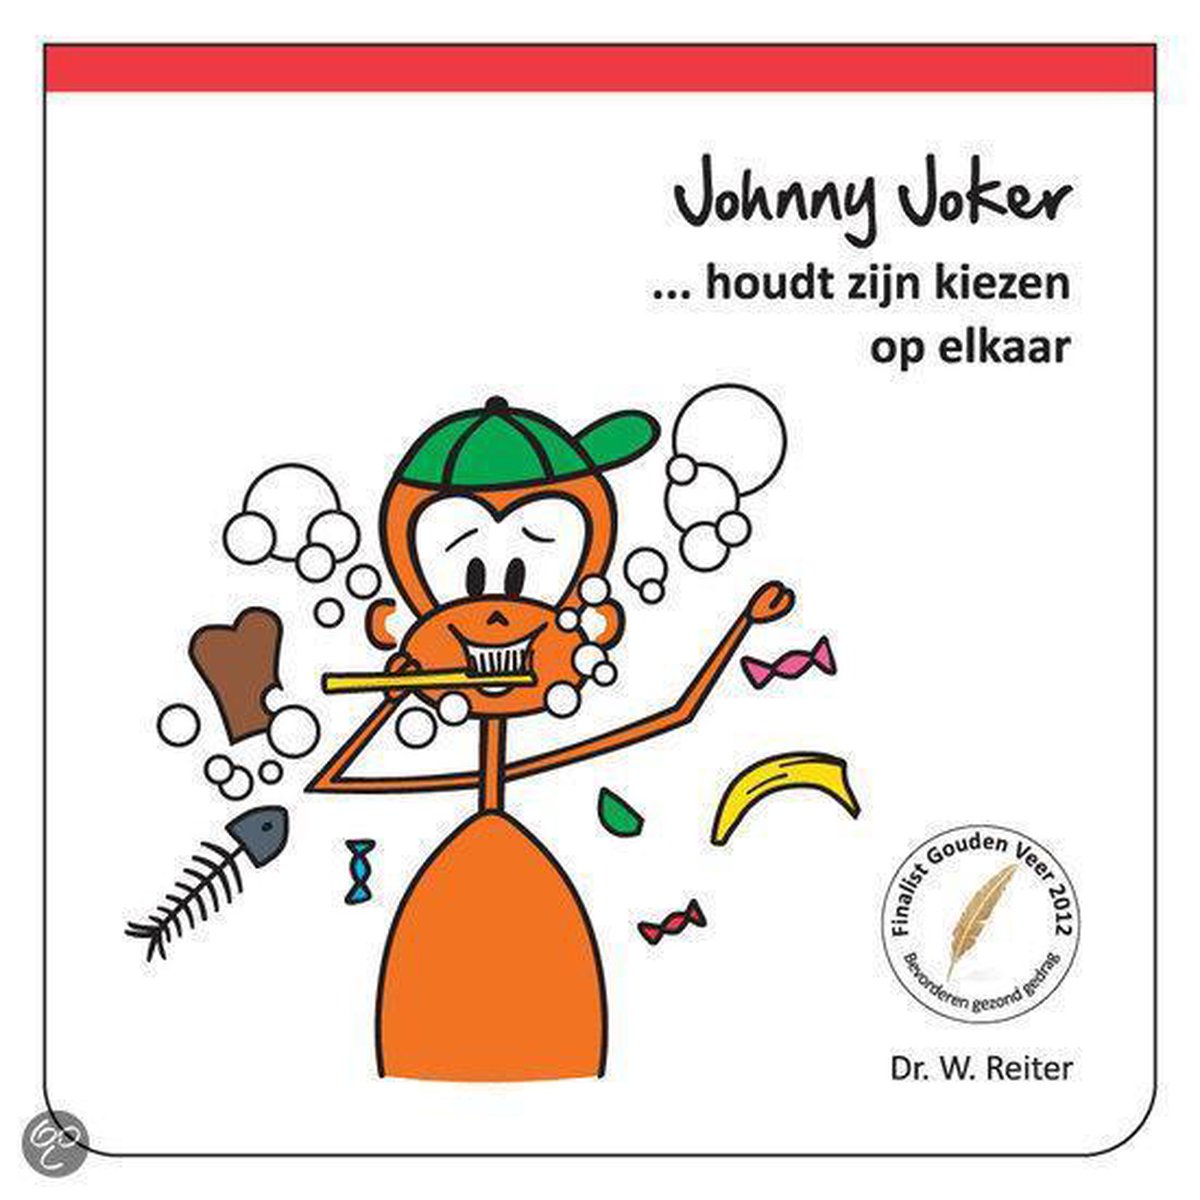 Johnny Joker houdt zijn kiezen op elkaar - tanden poetsen